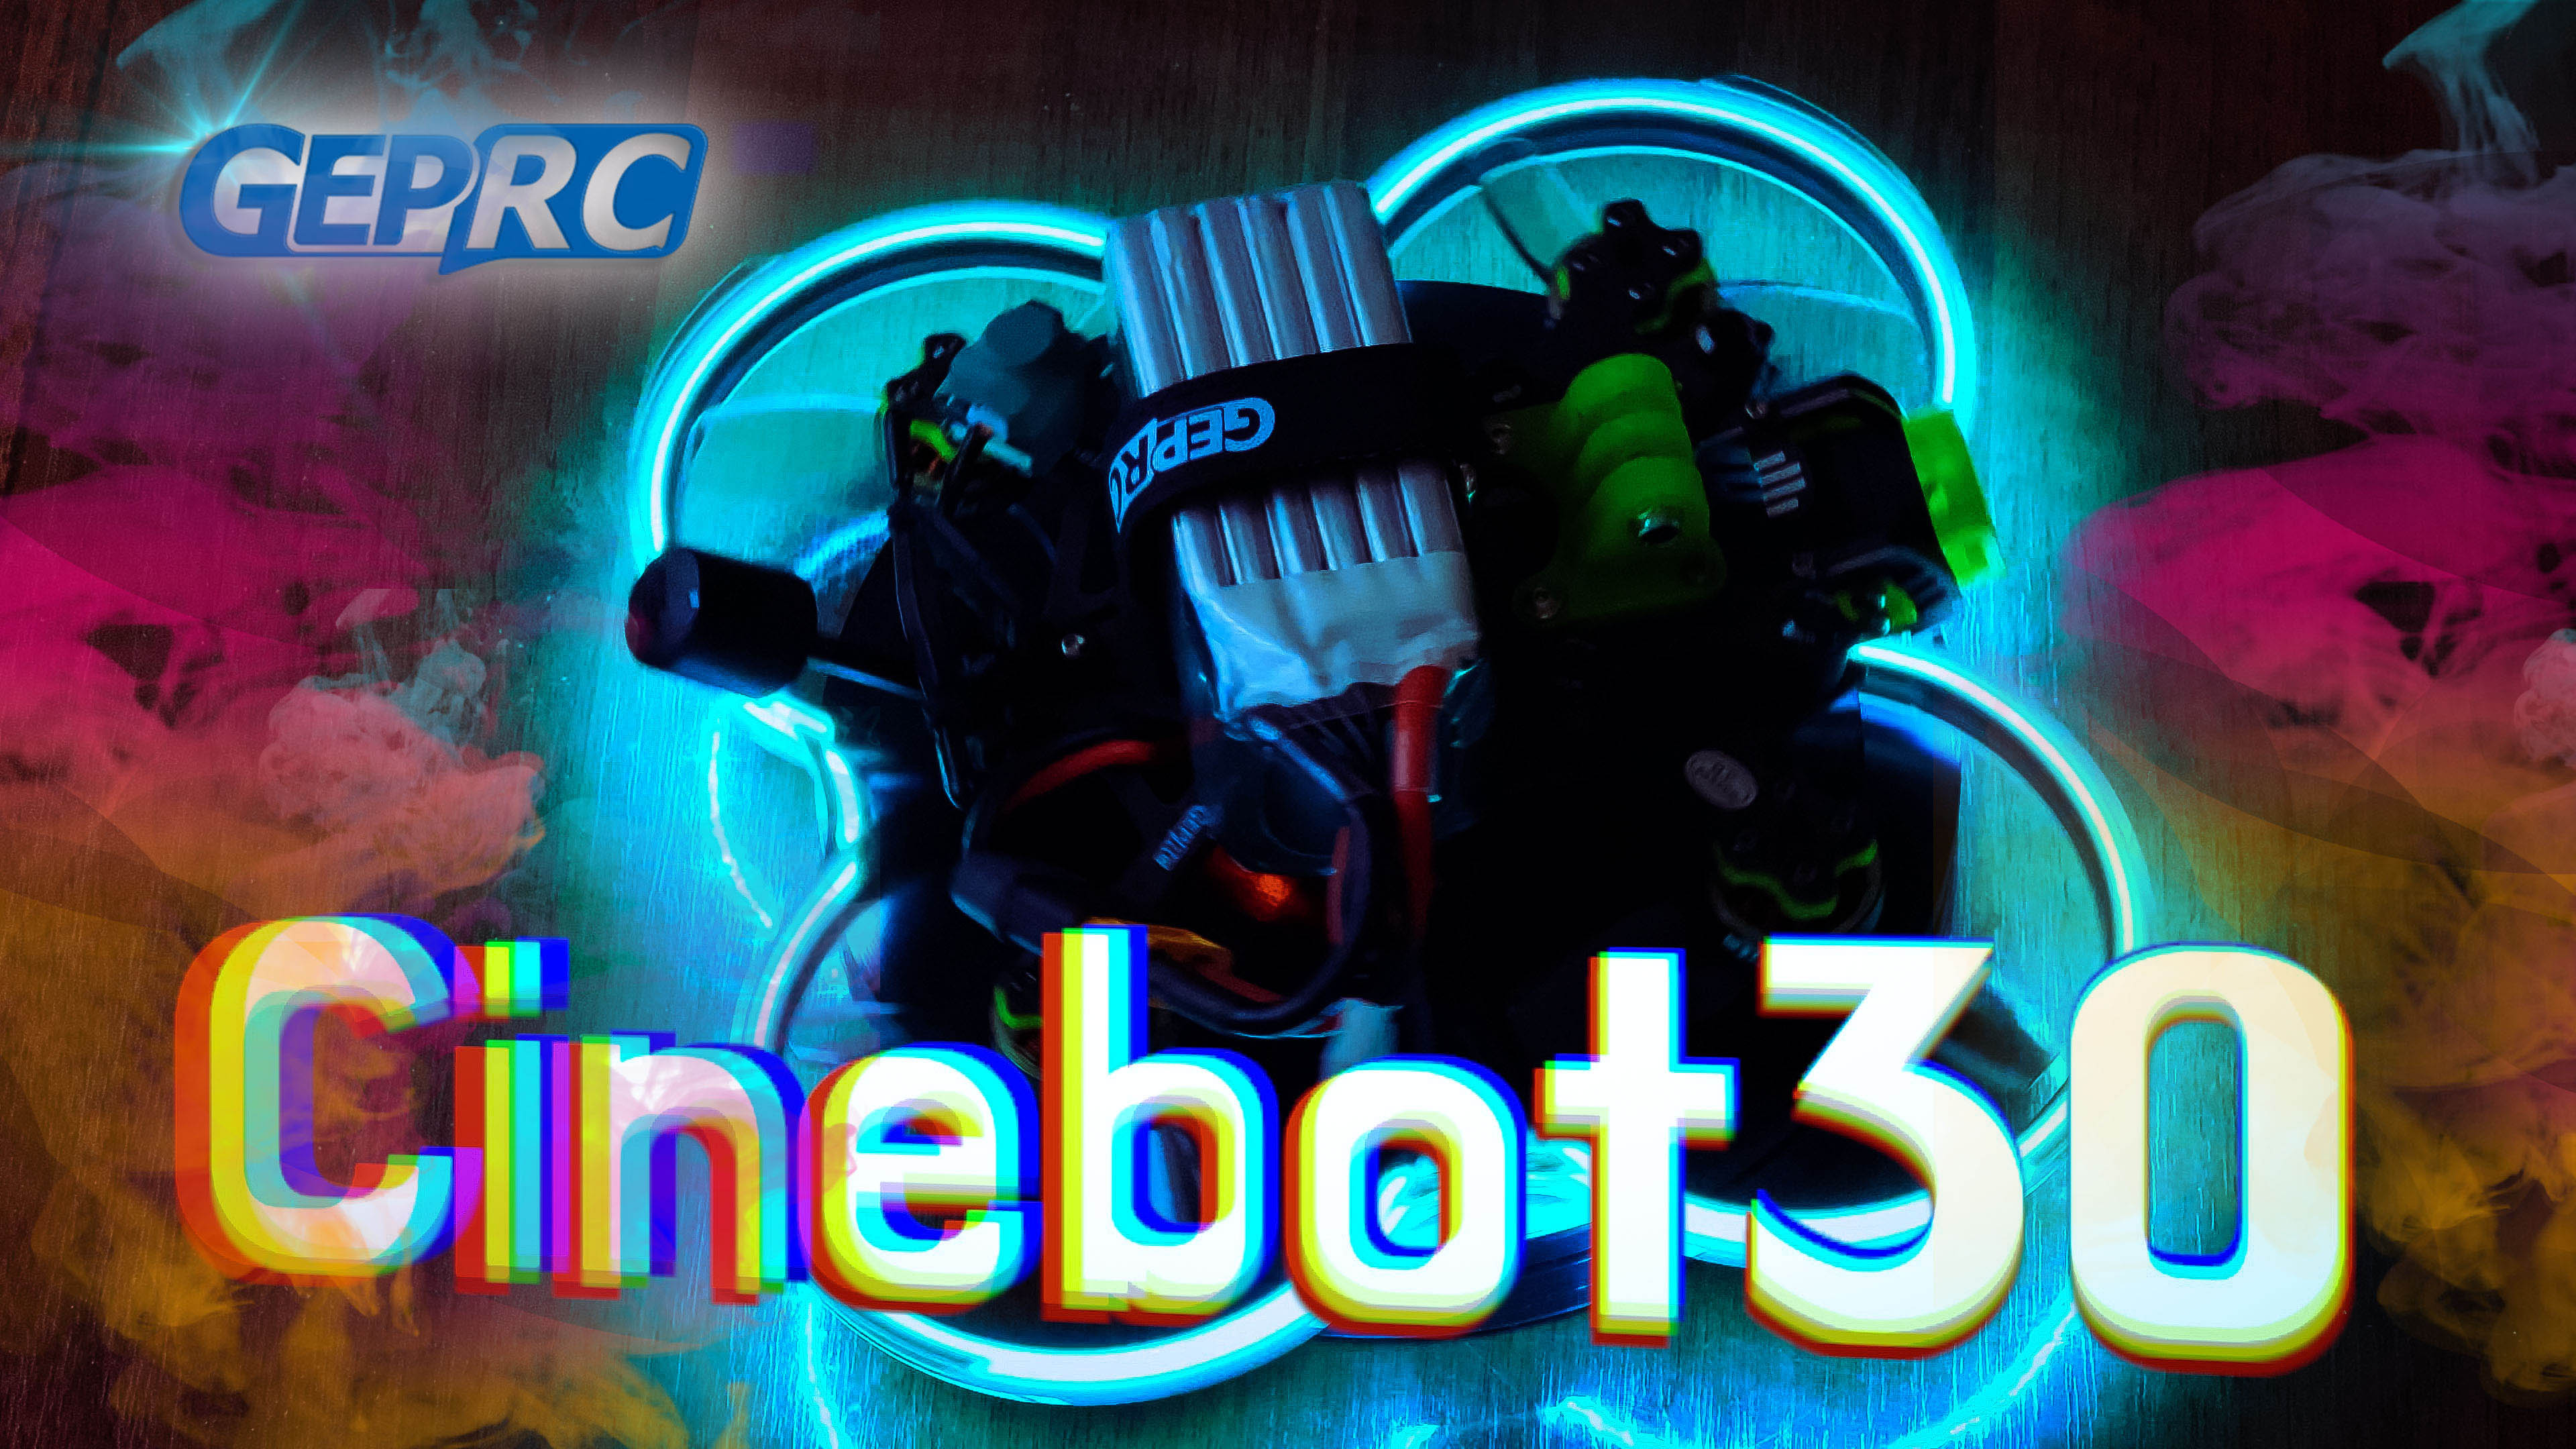 Cinebot 30. GEPRC cinebot25. Cinebot 25. Cinebot 30 купить.